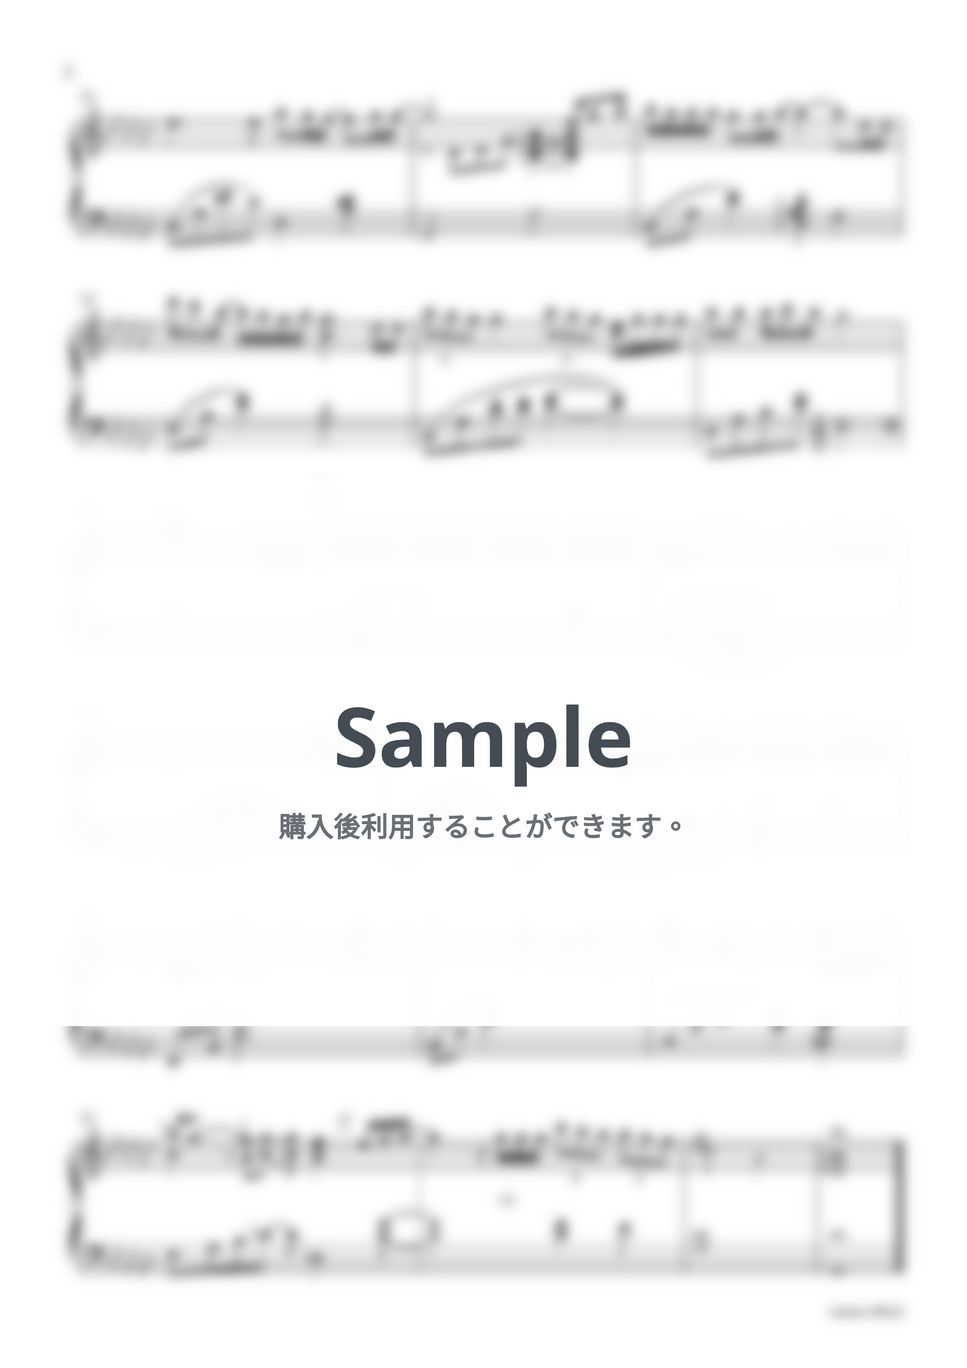 あいみょん - ハート -Piano & Strings ver.- by sammy